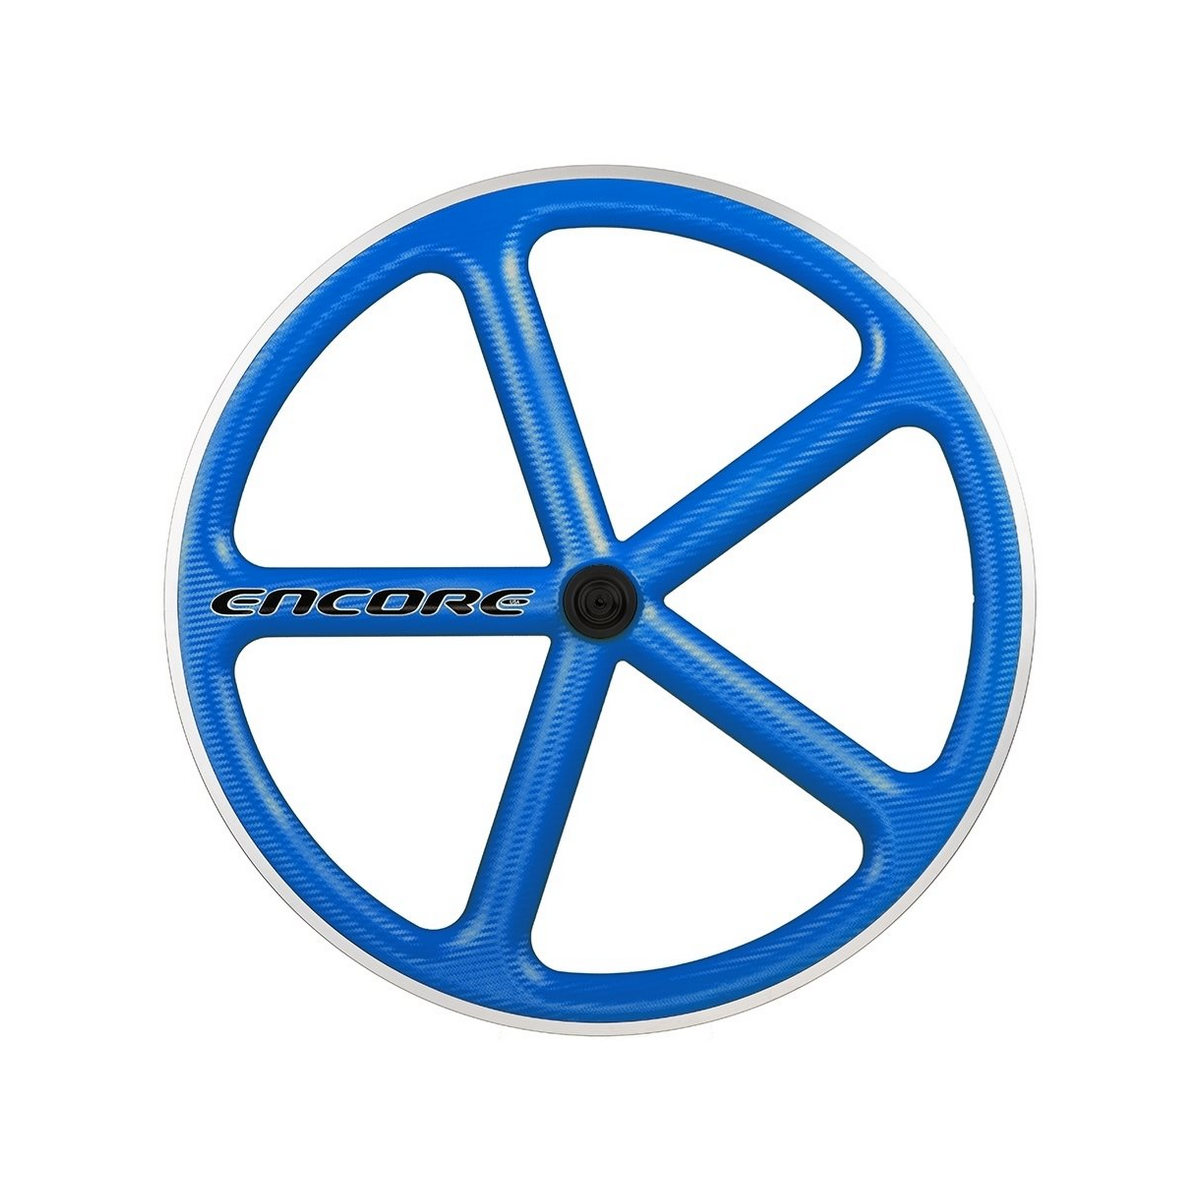 roda traseira 700c track 5 raios fibra de carbono azul msw